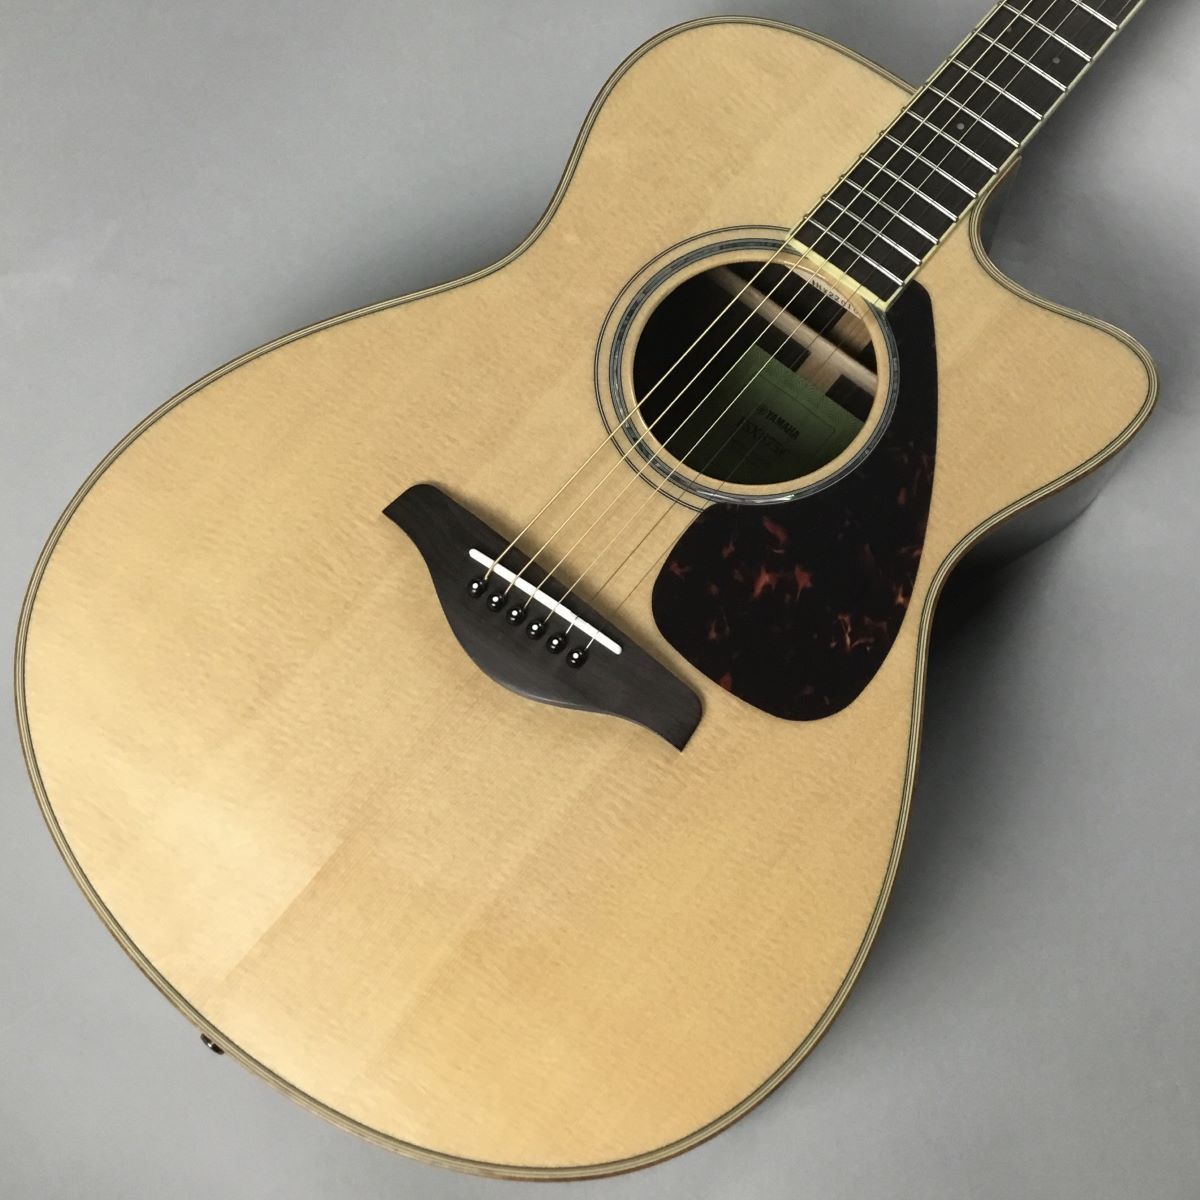 YAMAHA FSX875C NT(ナチュラル) アコースティックギター 【エレアコ